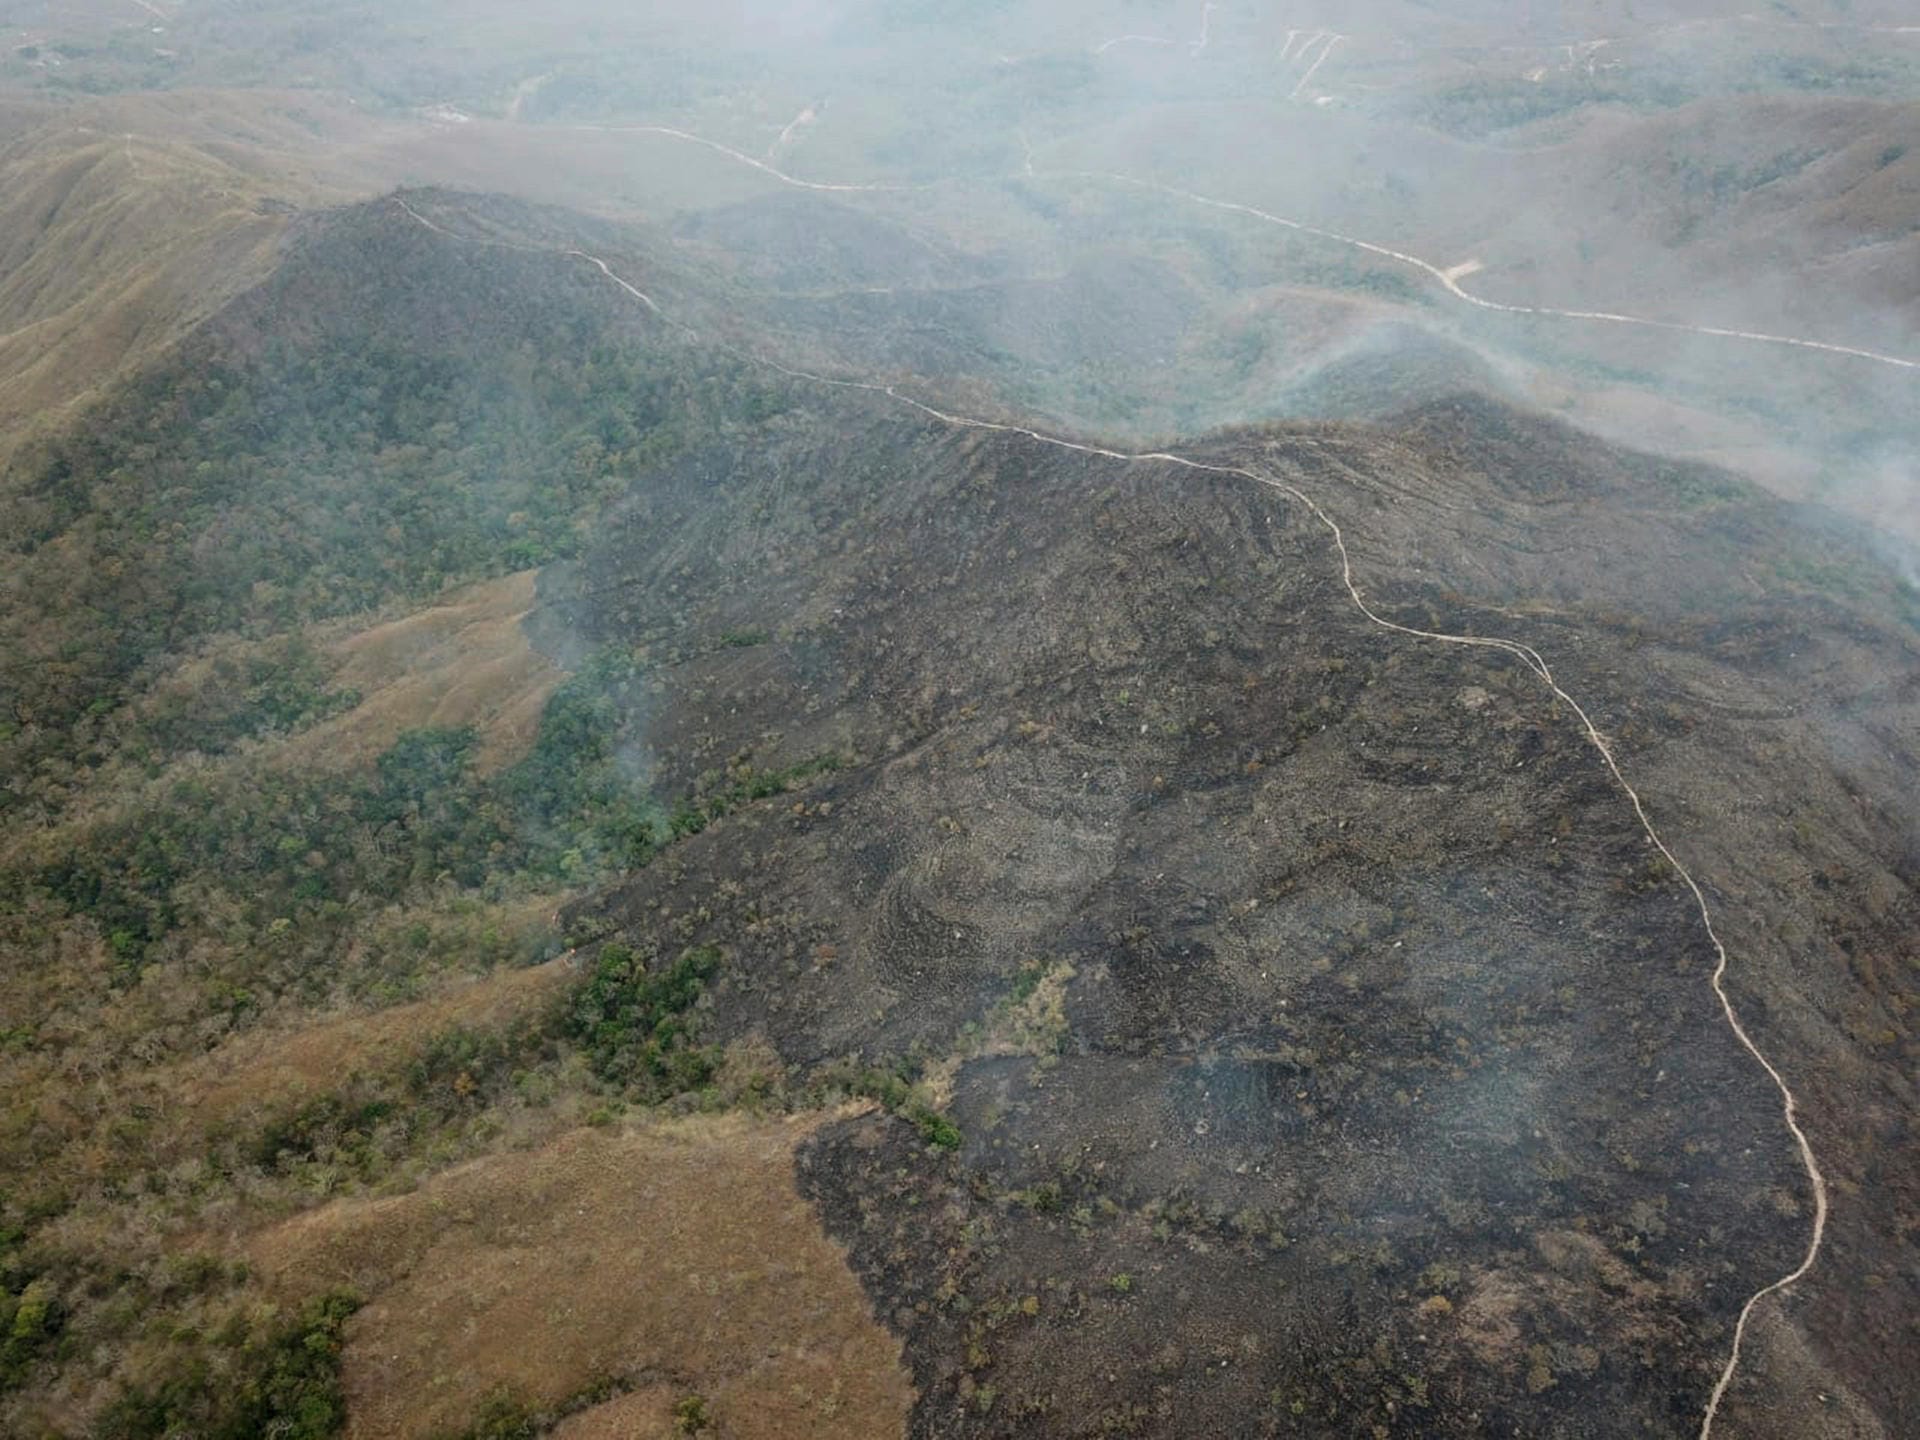 Rauch über der Region Chapada dos Guimaraes in Mato Grosso: Um die Feuerwehr zu unterstützen erwägt Präsident Bolsonaro nun den Einsatz von Soldaten im Kampf gegen das Feuer.